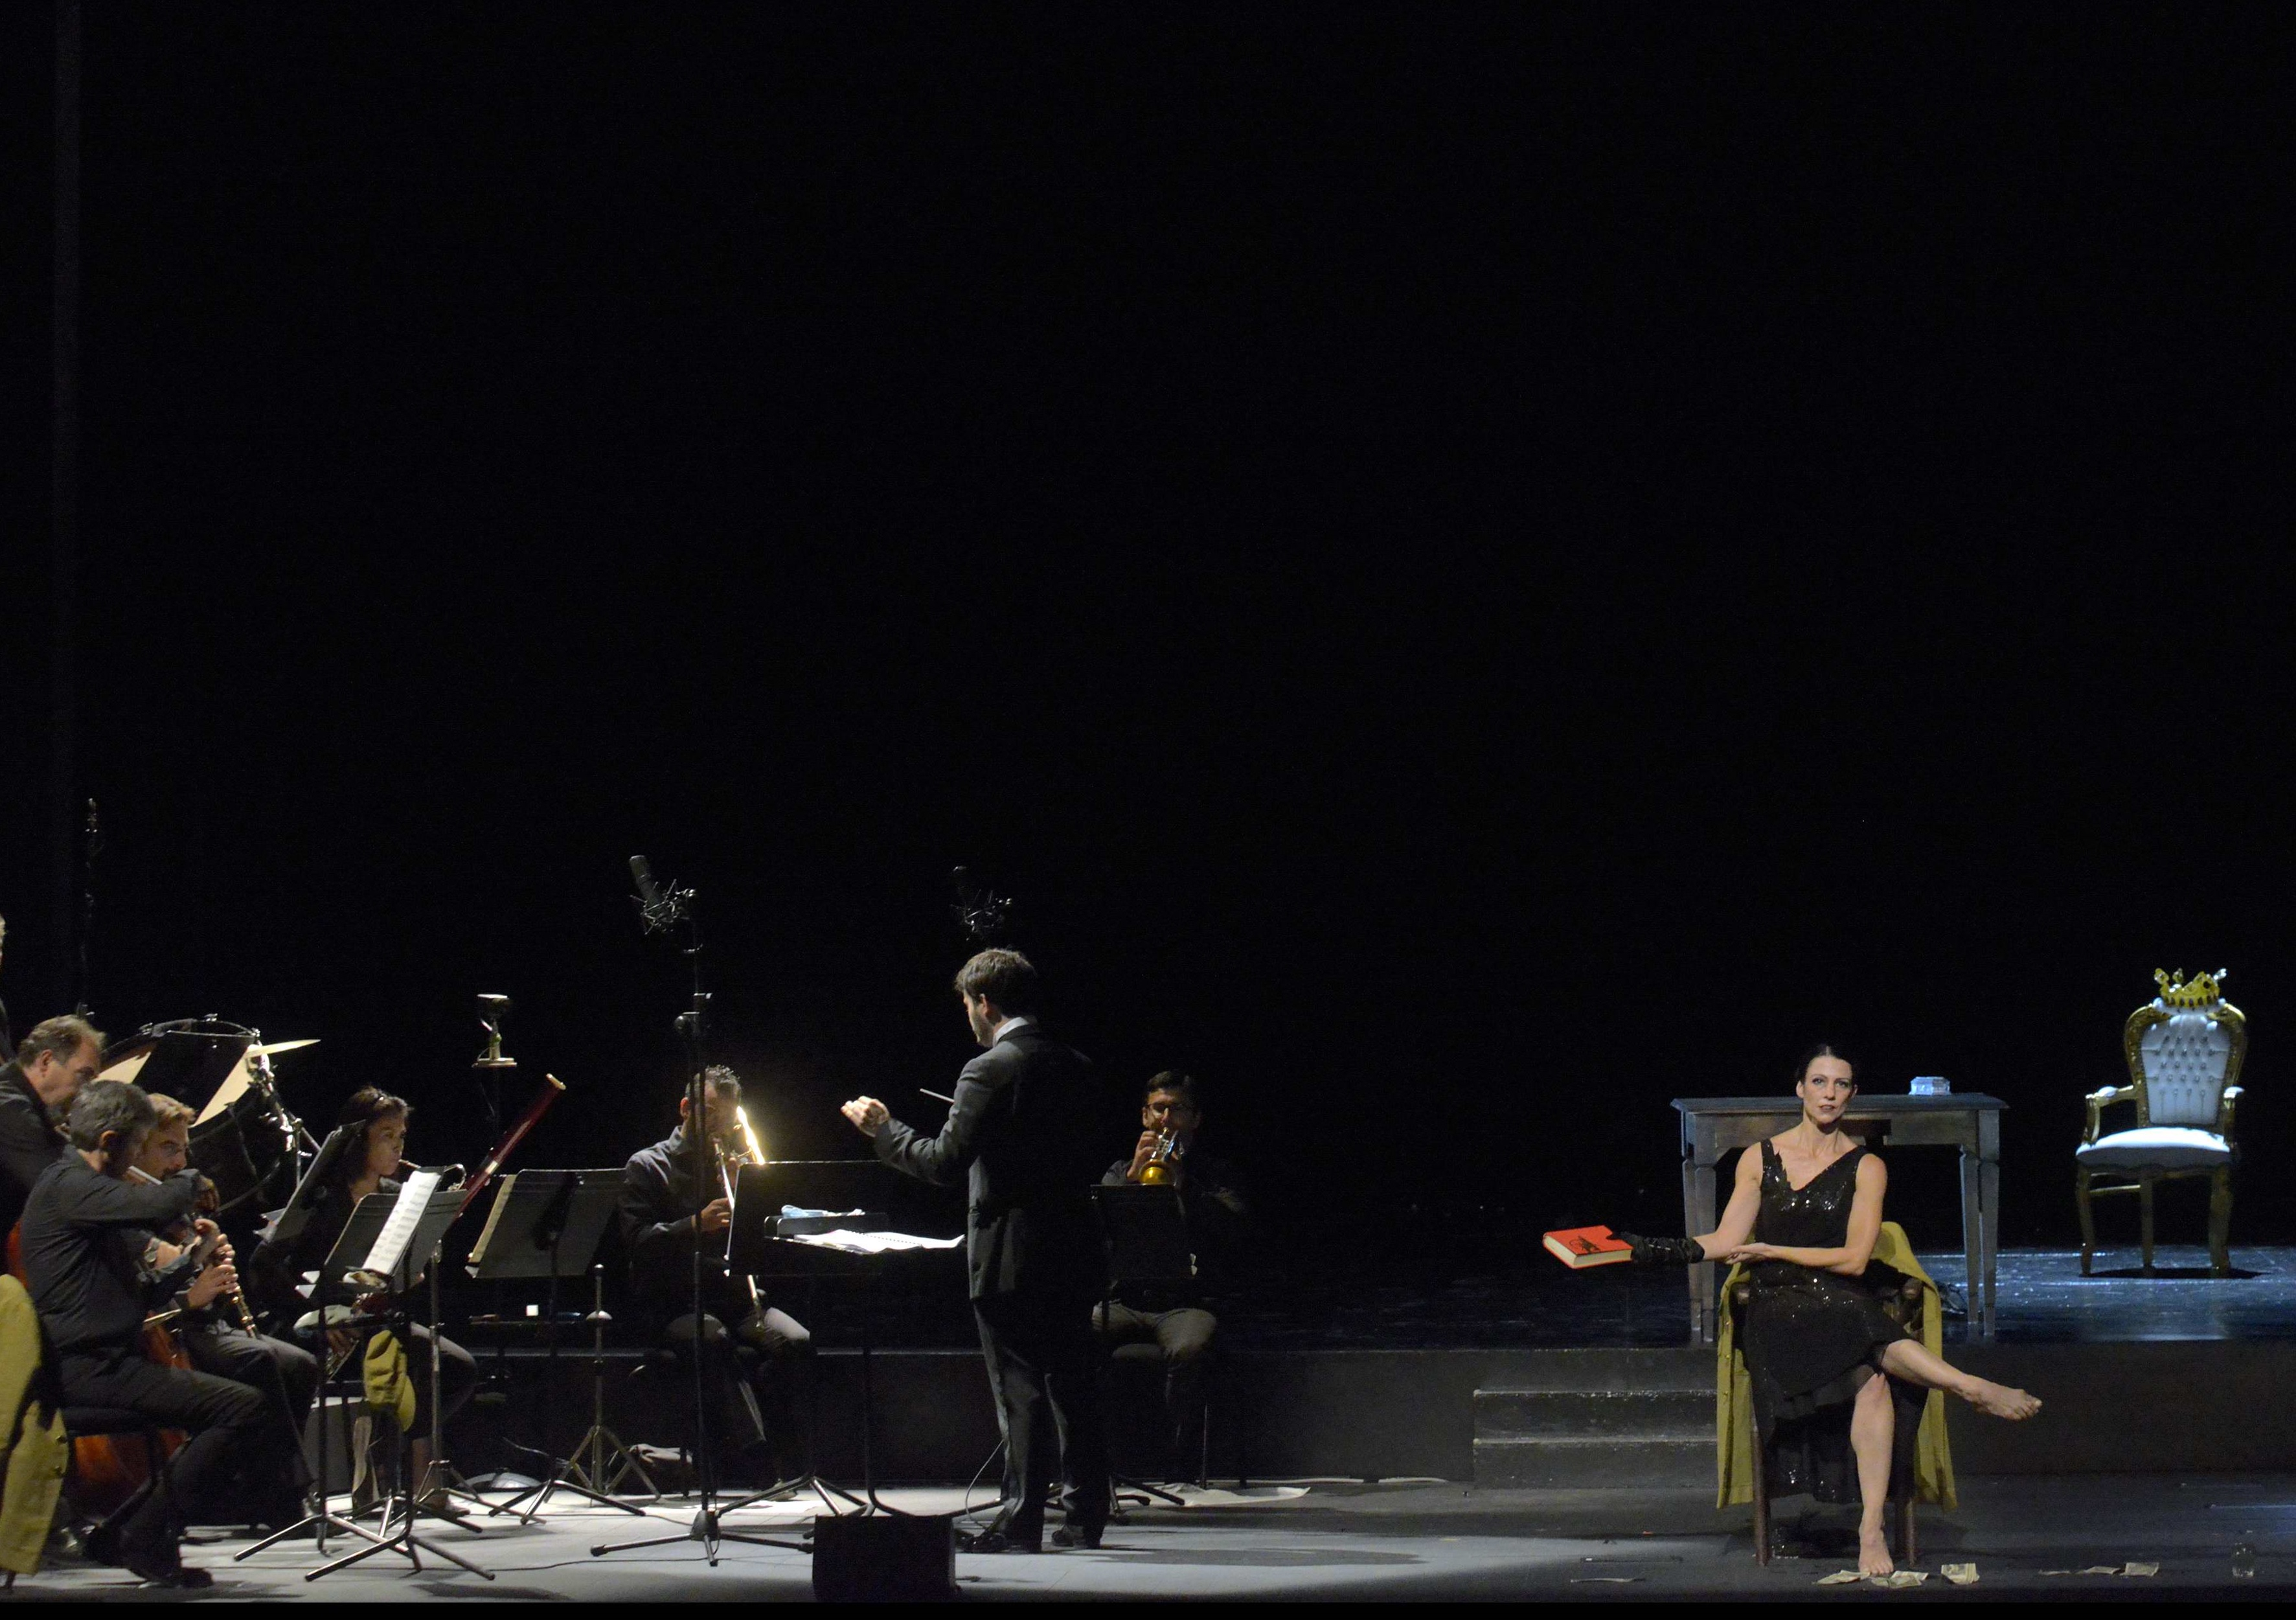 A sinistra orchestra, a destra donna che regge un libro, seduta su una sedia sopra al palco